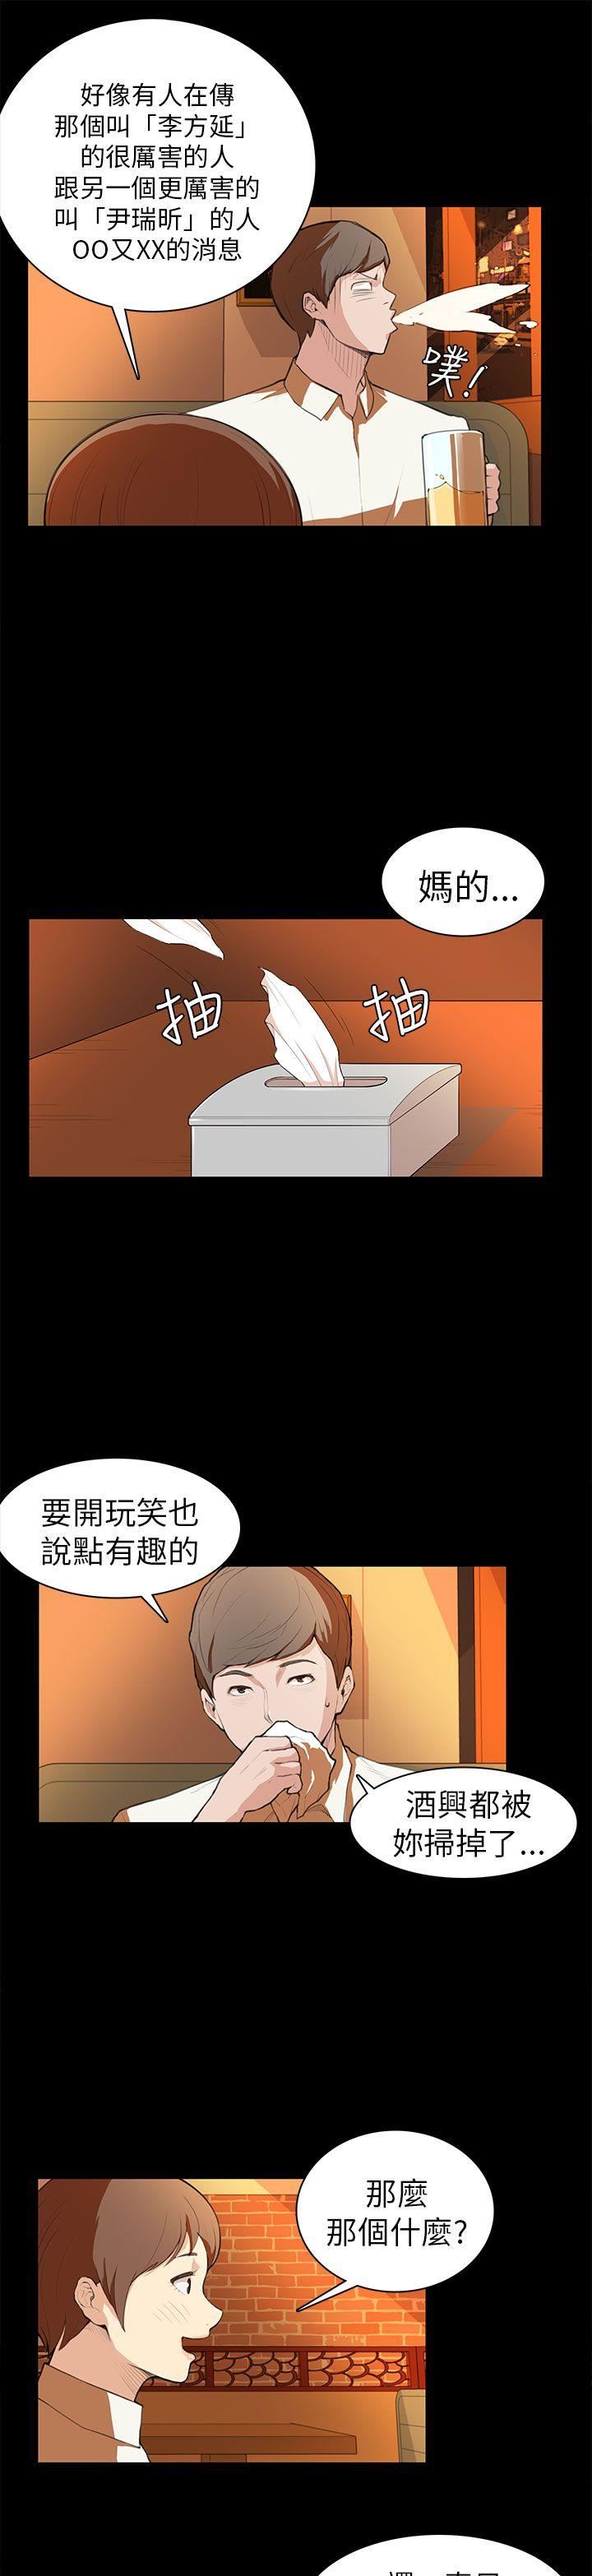 韩国污漫画 斯德哥爾摩癥候群 第7话 11